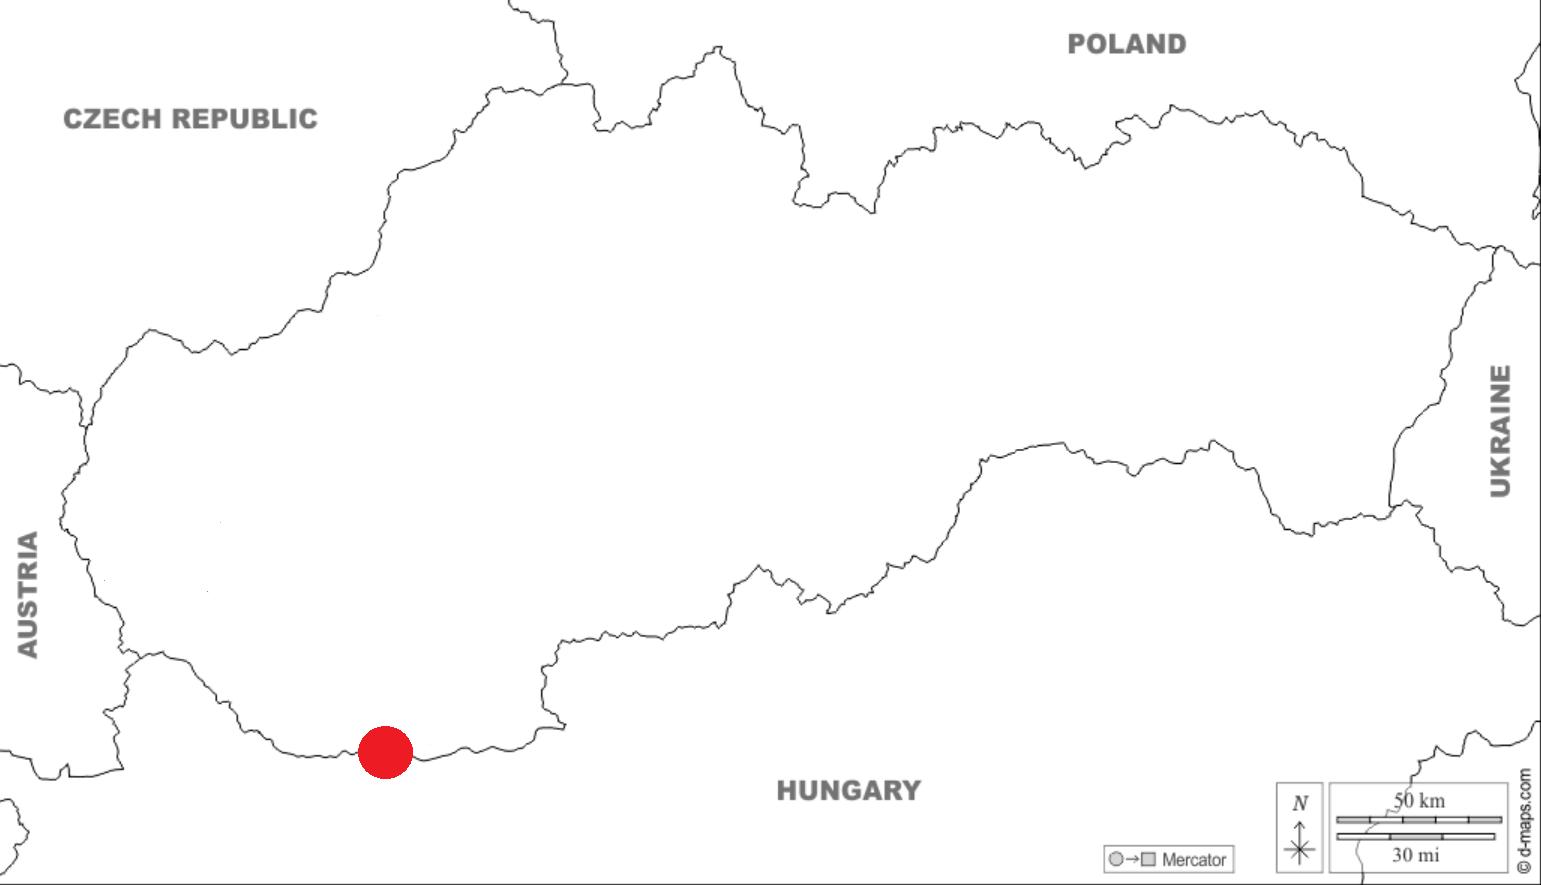 mapa Slovenska